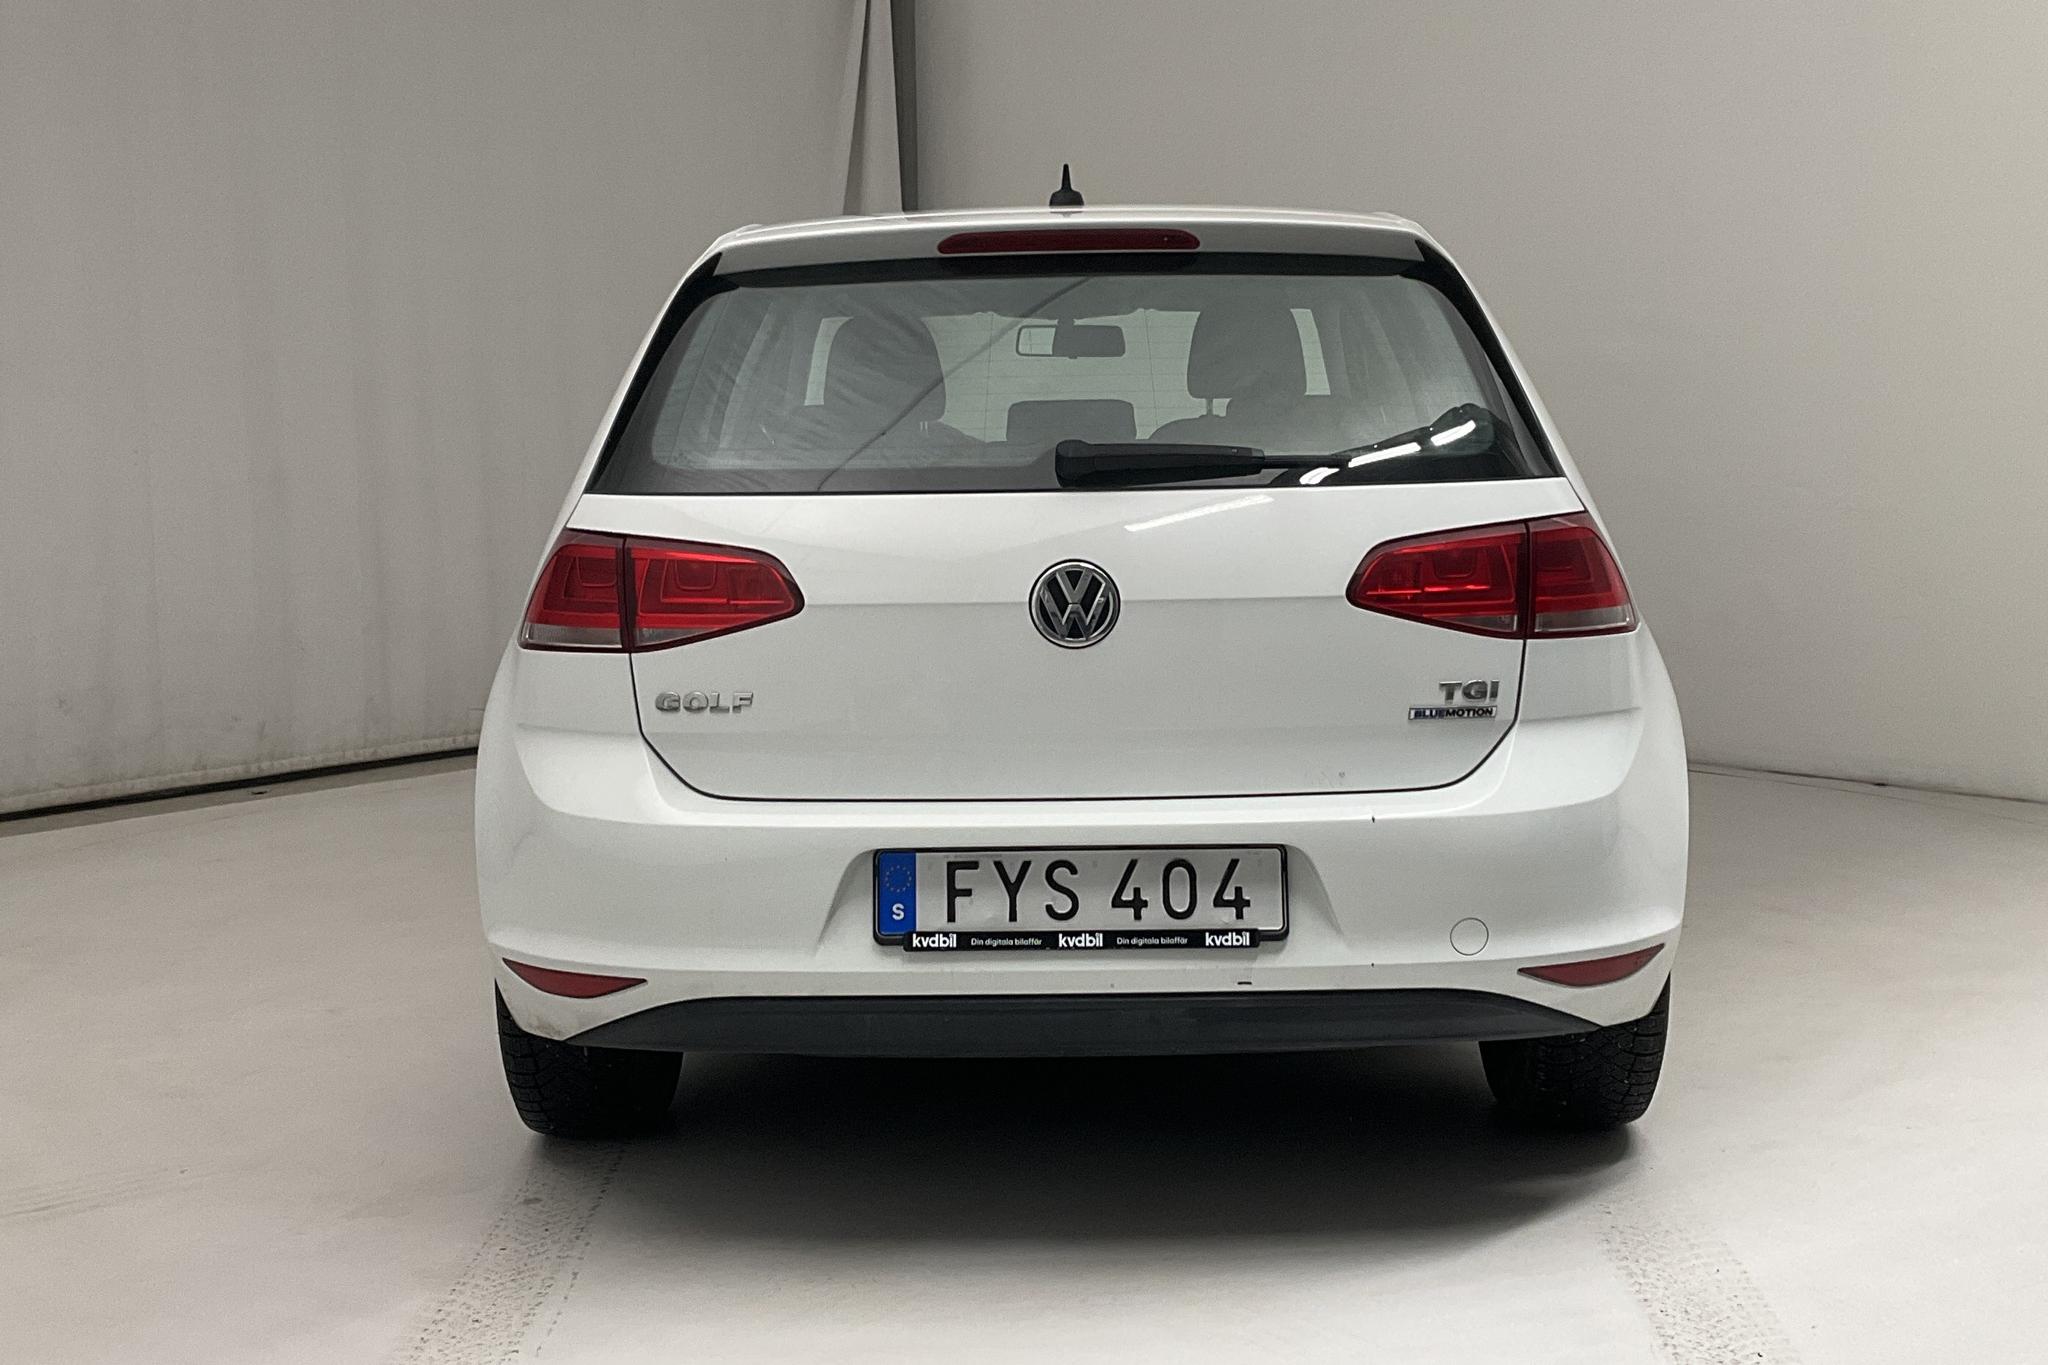 VW Golf VII 1.4 TGI 5dr (110hk) - 111 560 km - Automatic - white - 2017